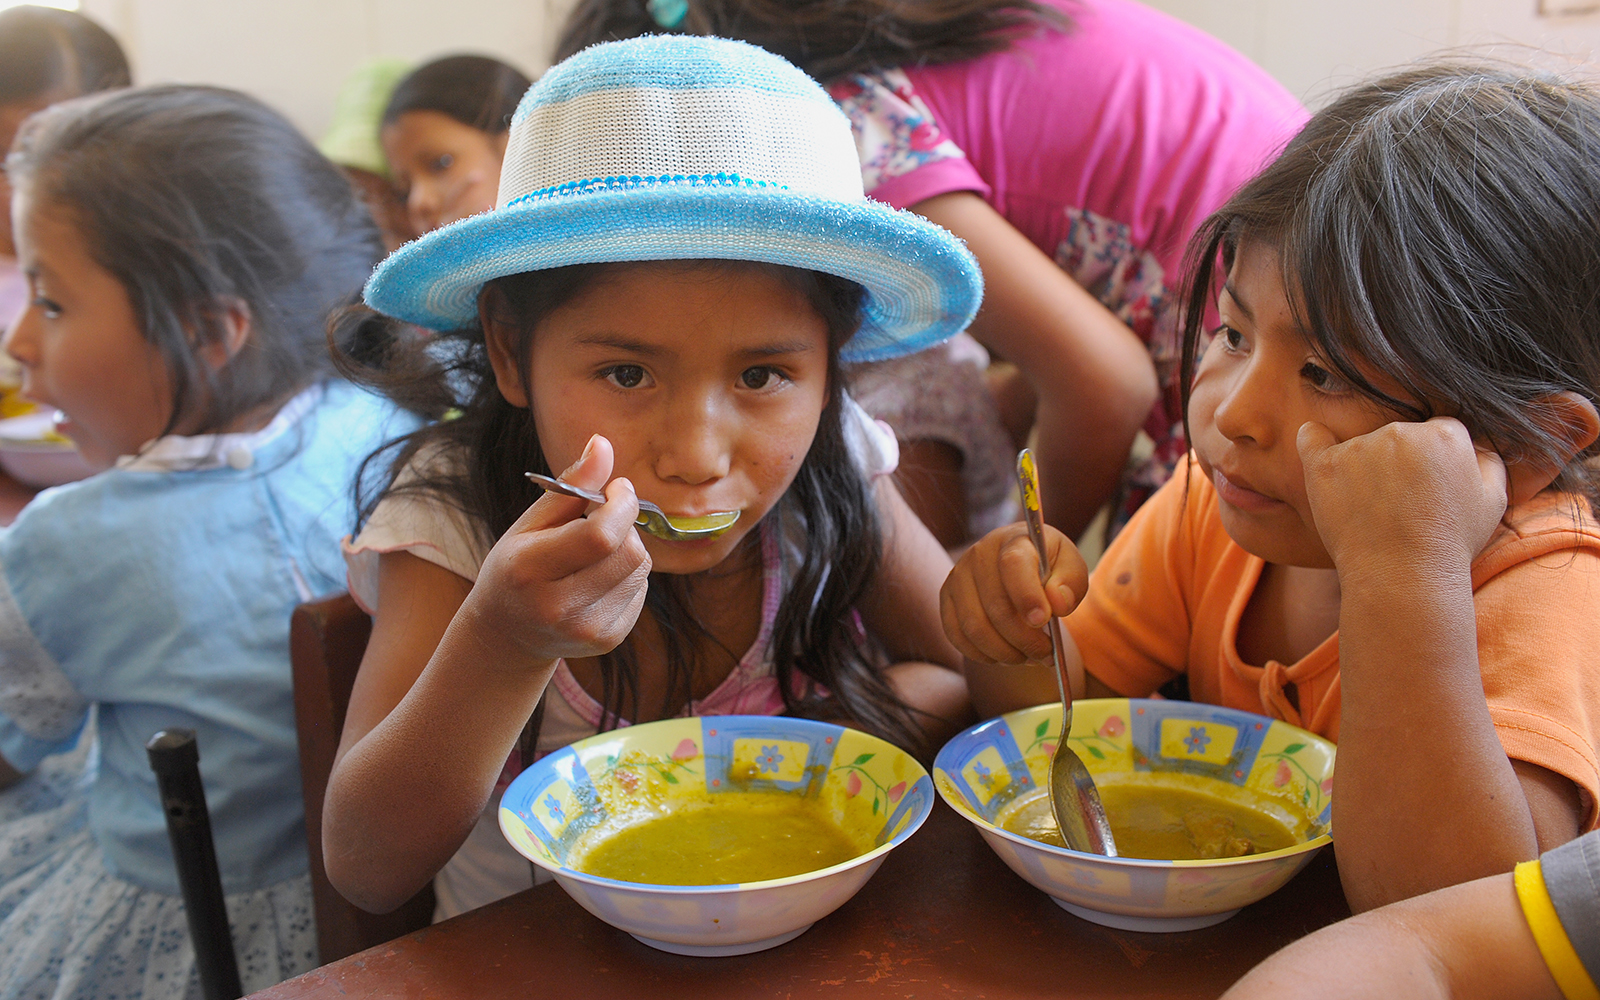 Boliviaans meisje eet soep uit een kom.